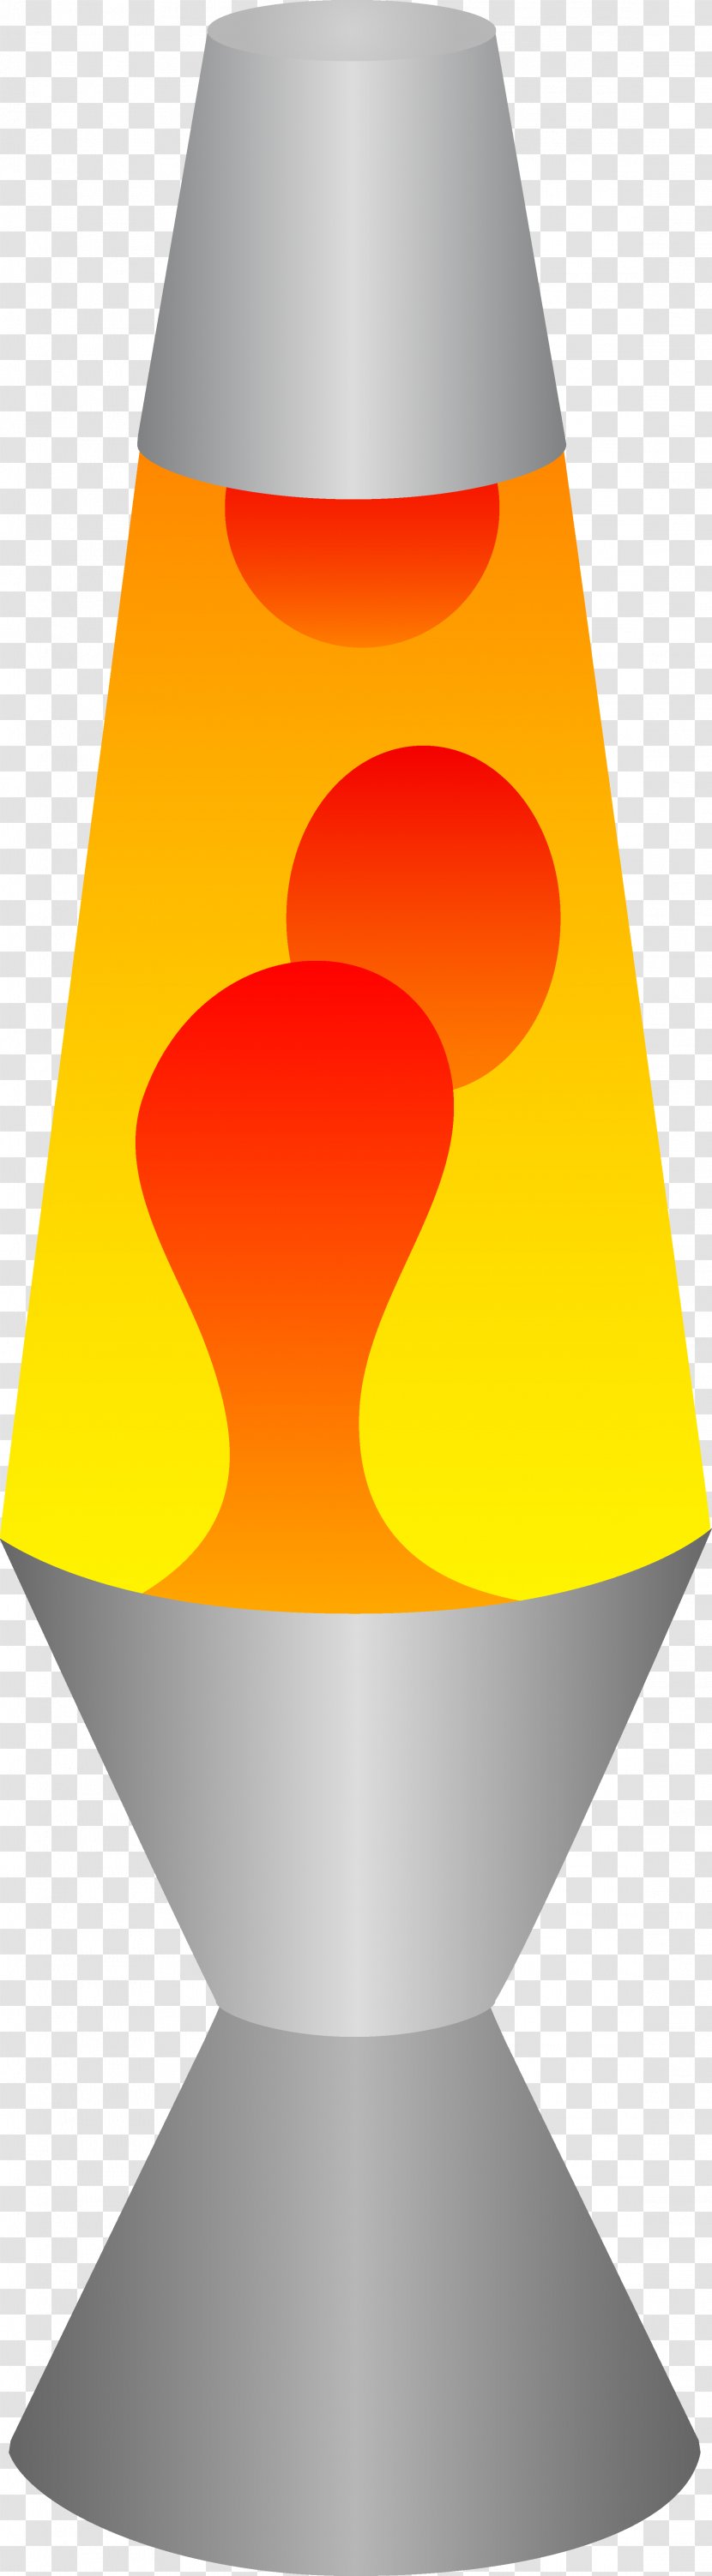 Lava Lamp Clip Art - Lamps Pictures Transparent PNG